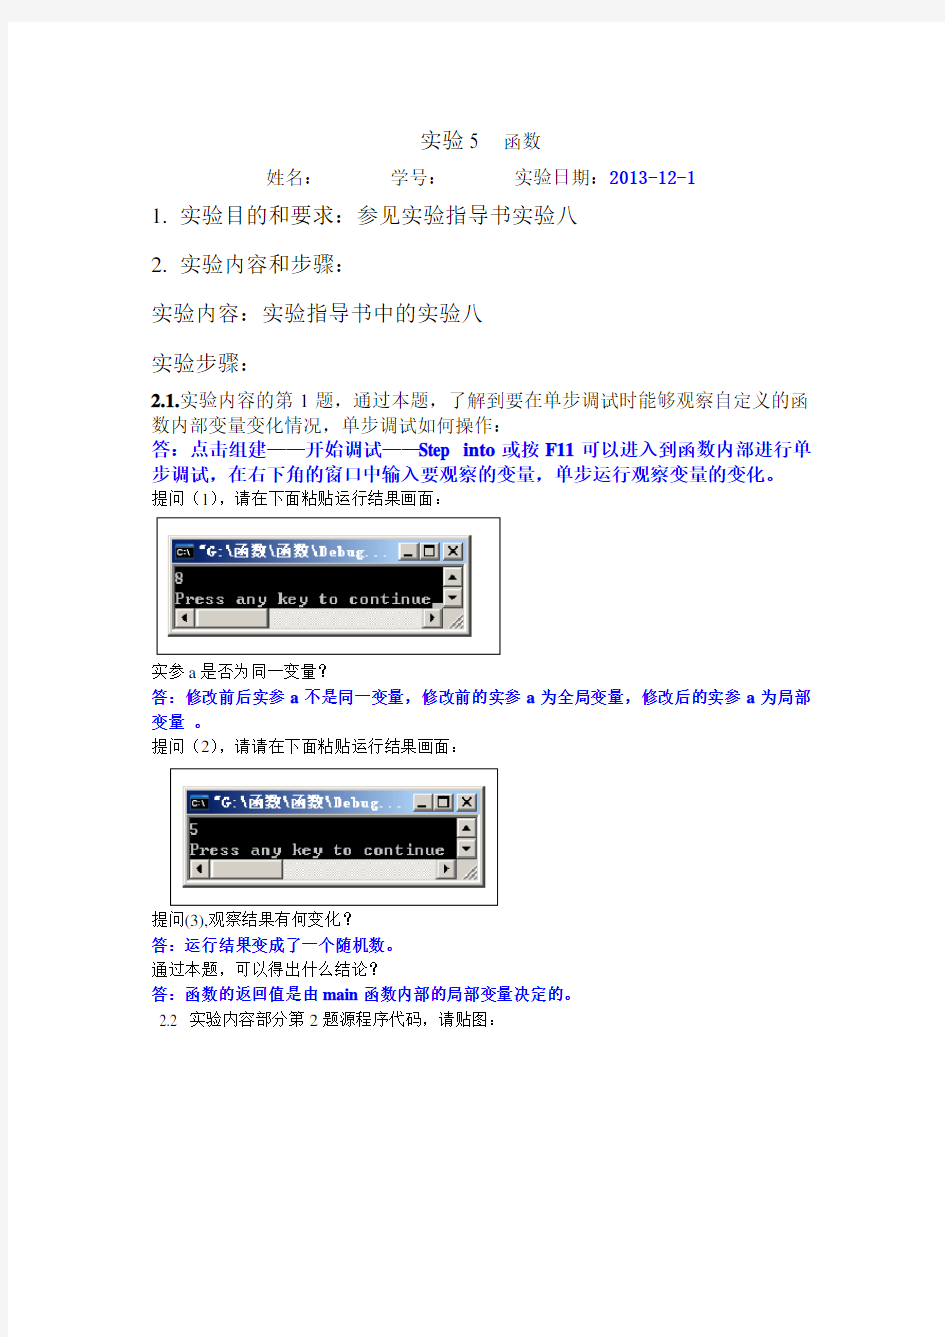 桂林电子科技大学 C语言 程序设计 习题 答案(周信东) 实验5  函数